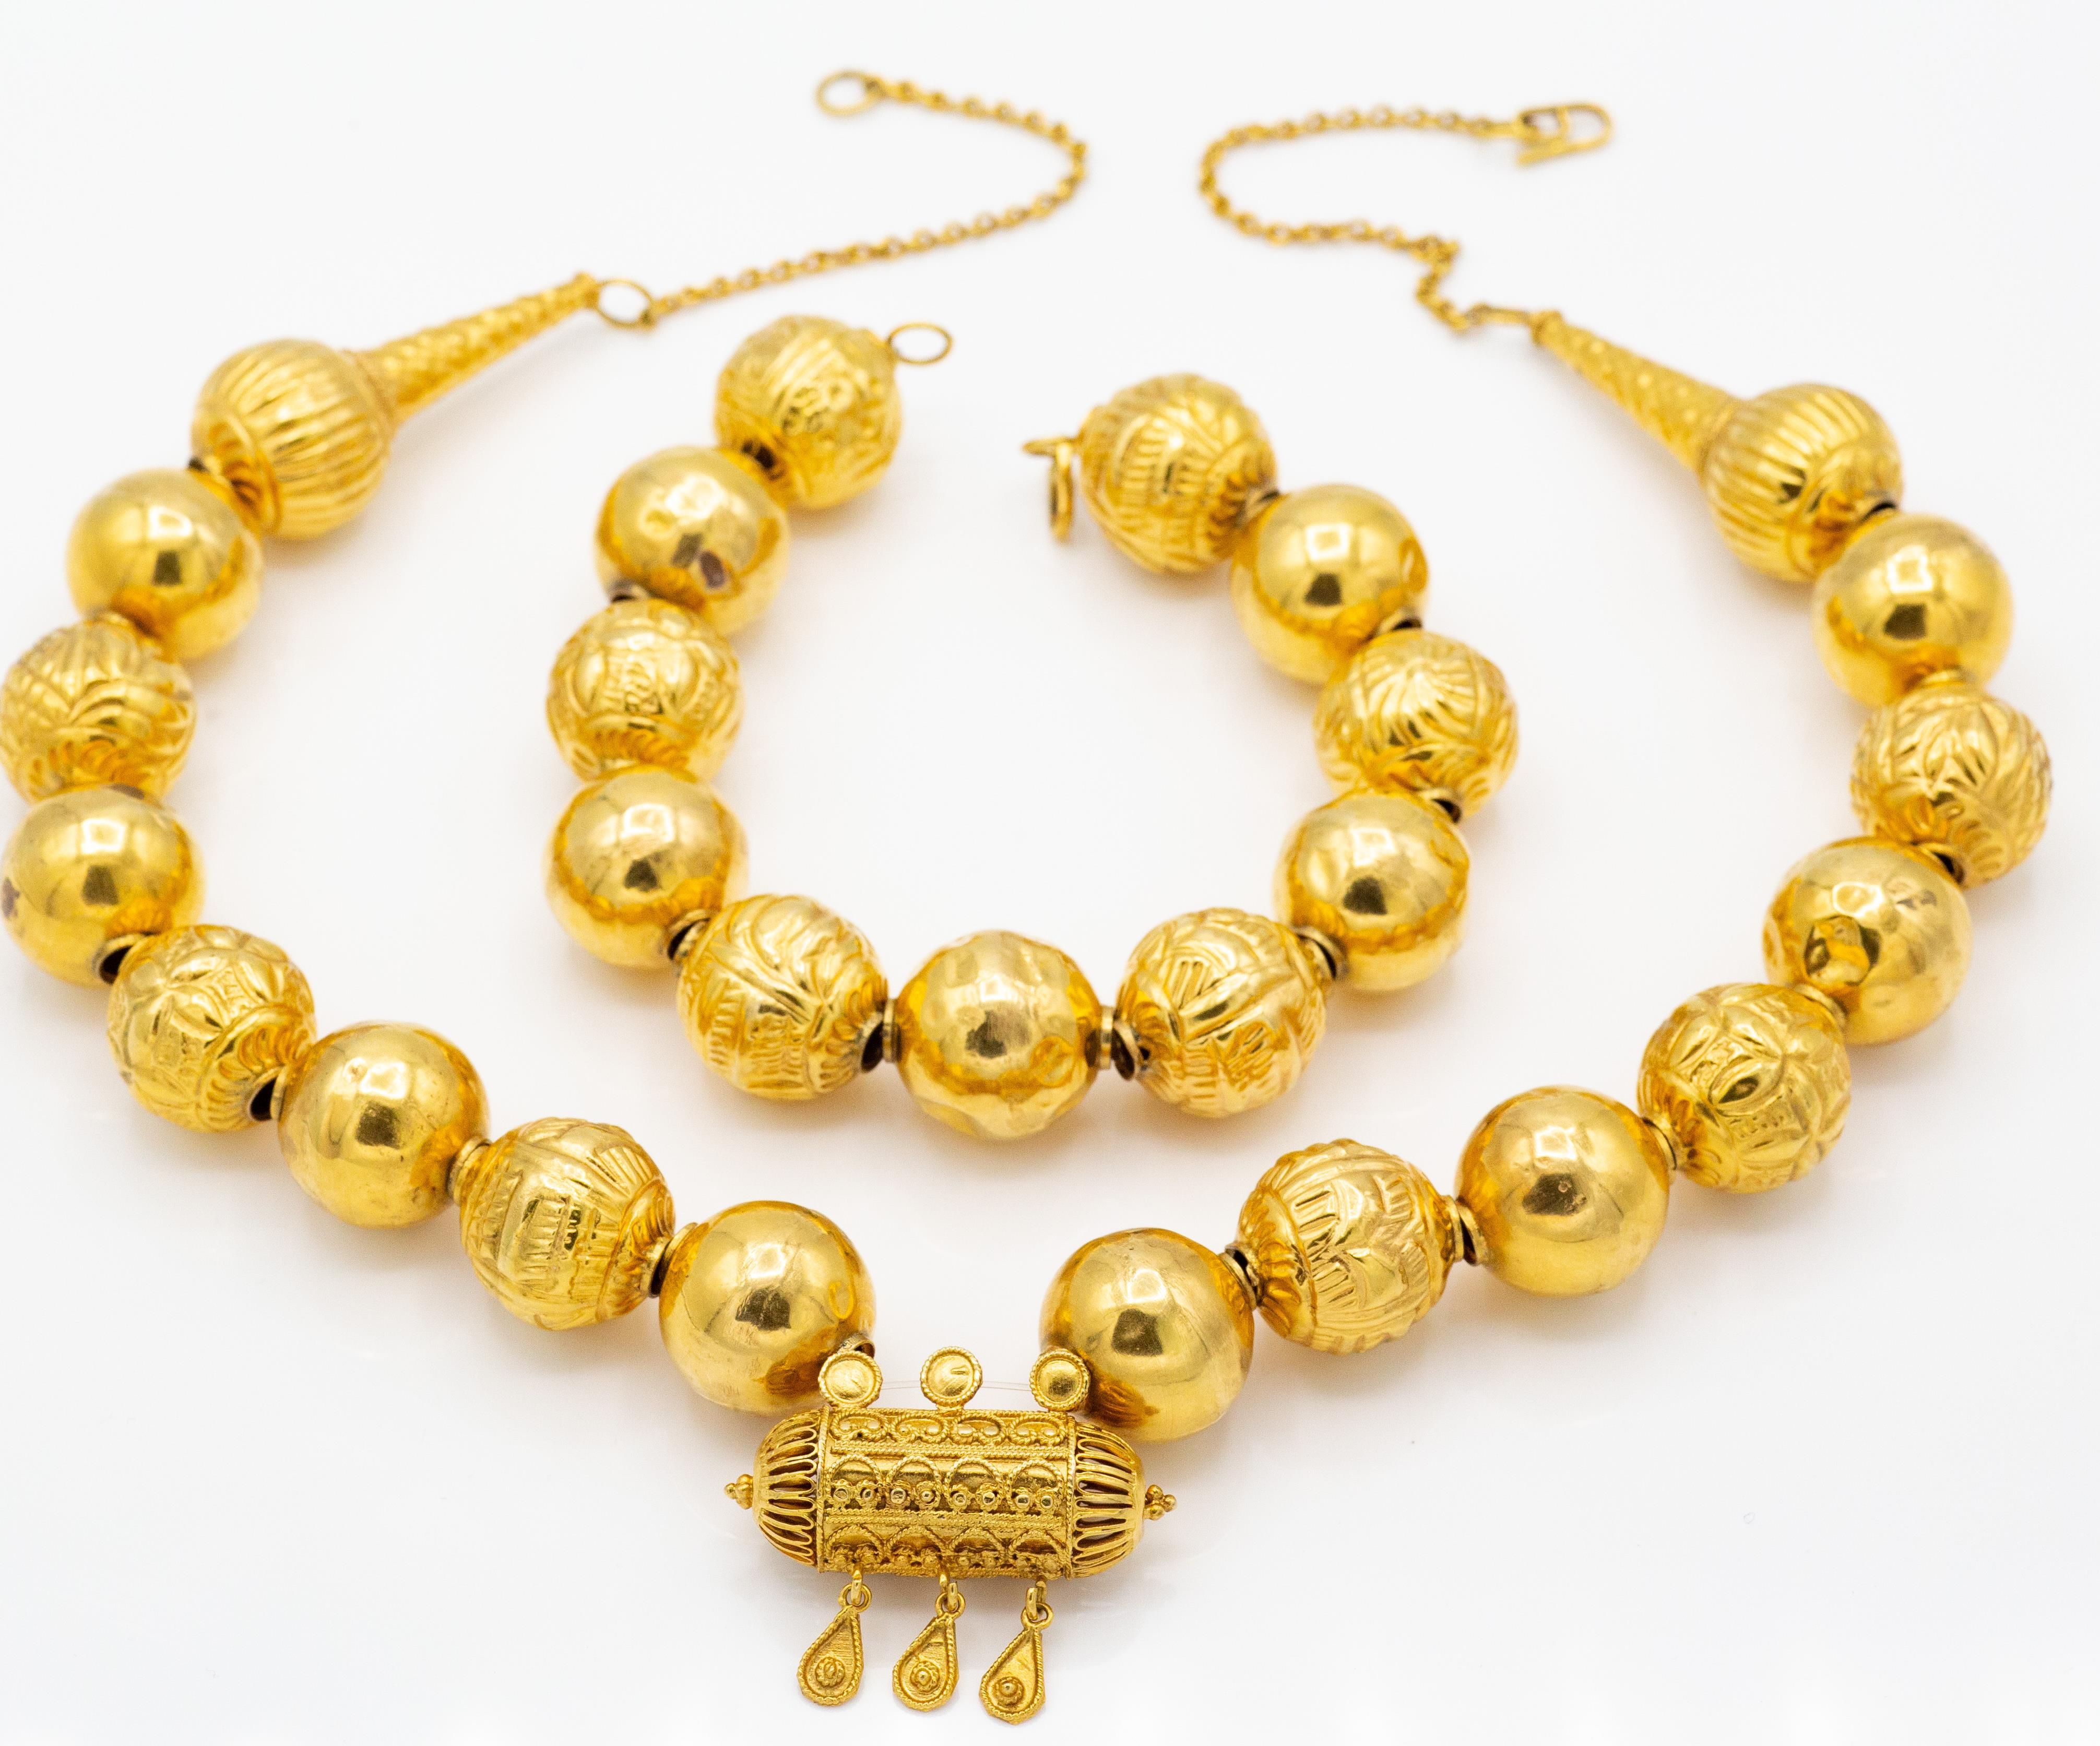 A Hallmarked 9ct Gold Byzantine Necklace & Bracelet - Image 3 of 6